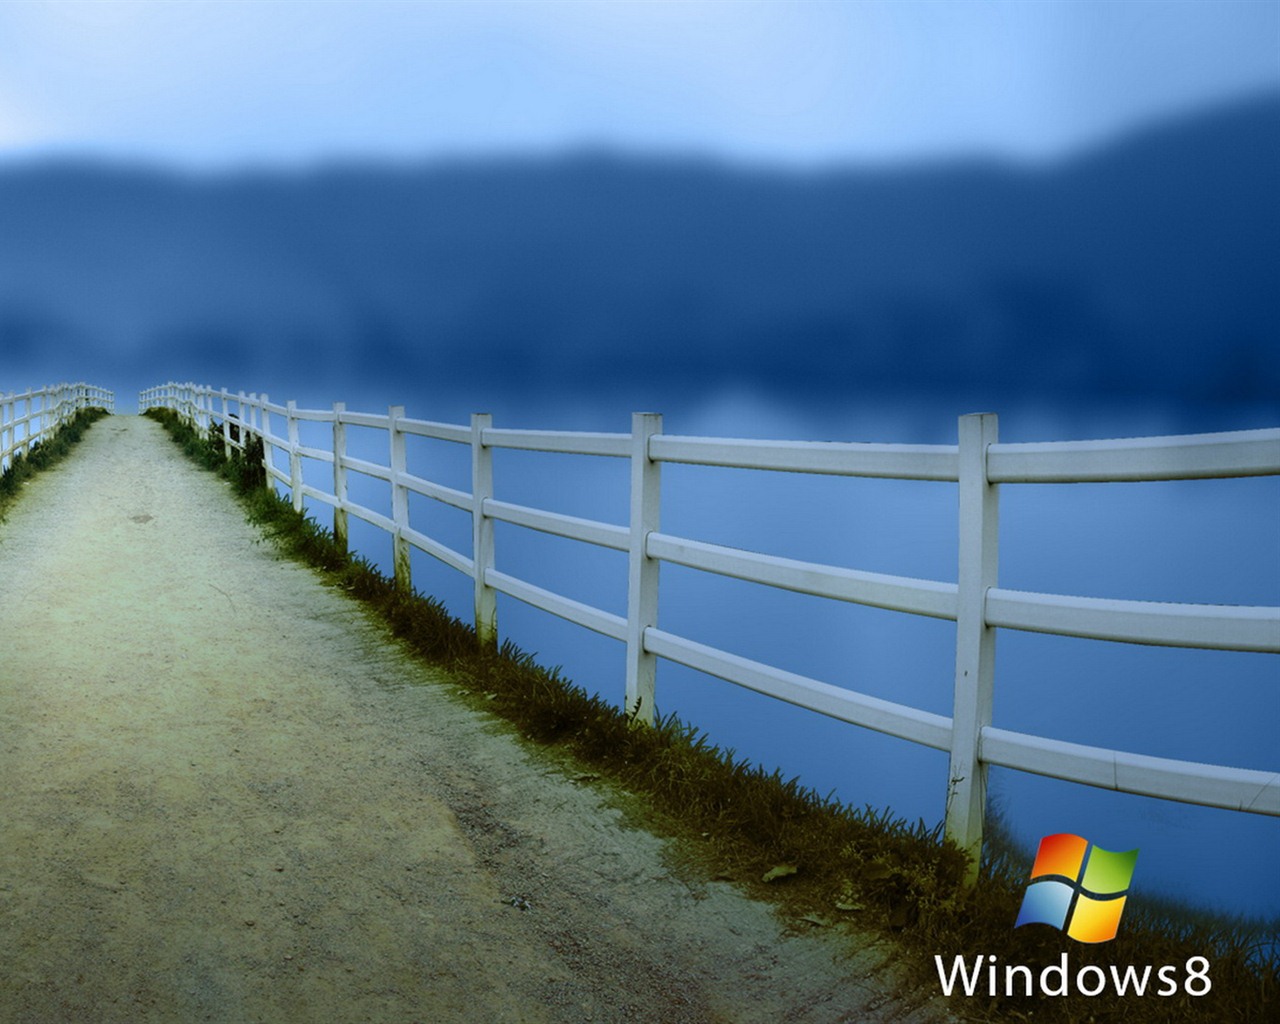 Windows 8 theme wallpaper (1) #6 - 1280x1024